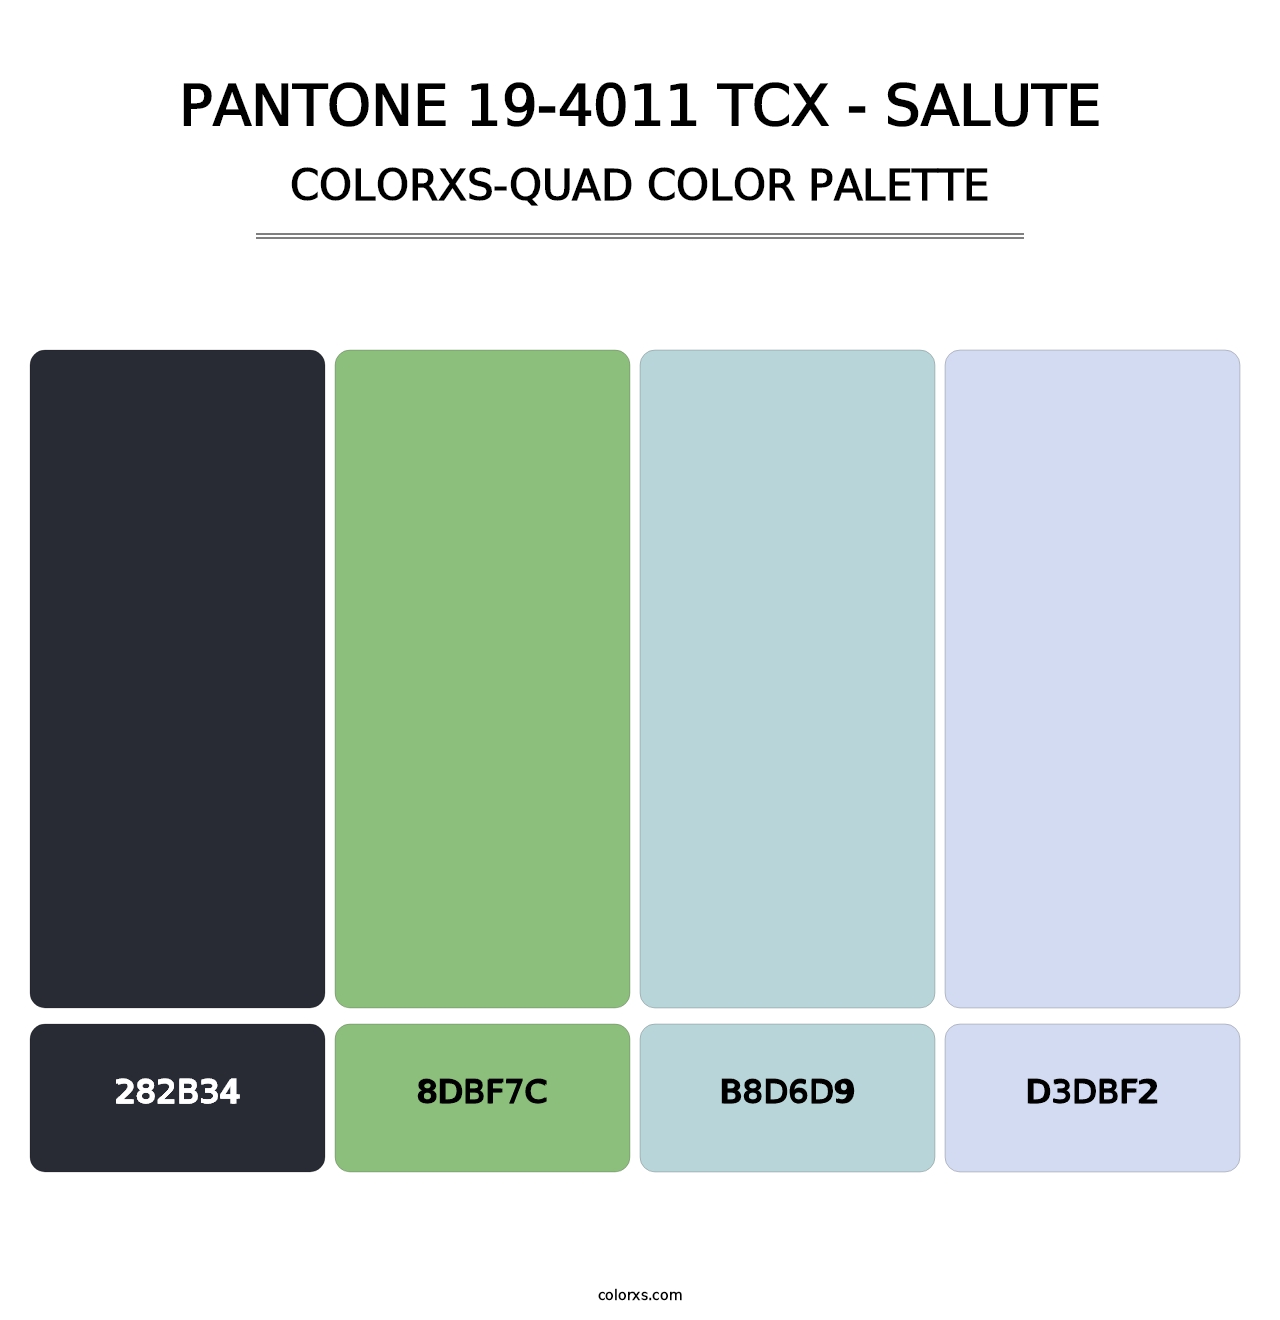 PANTONE 19-4011 TCX - Salute - Colorxs Quad Palette